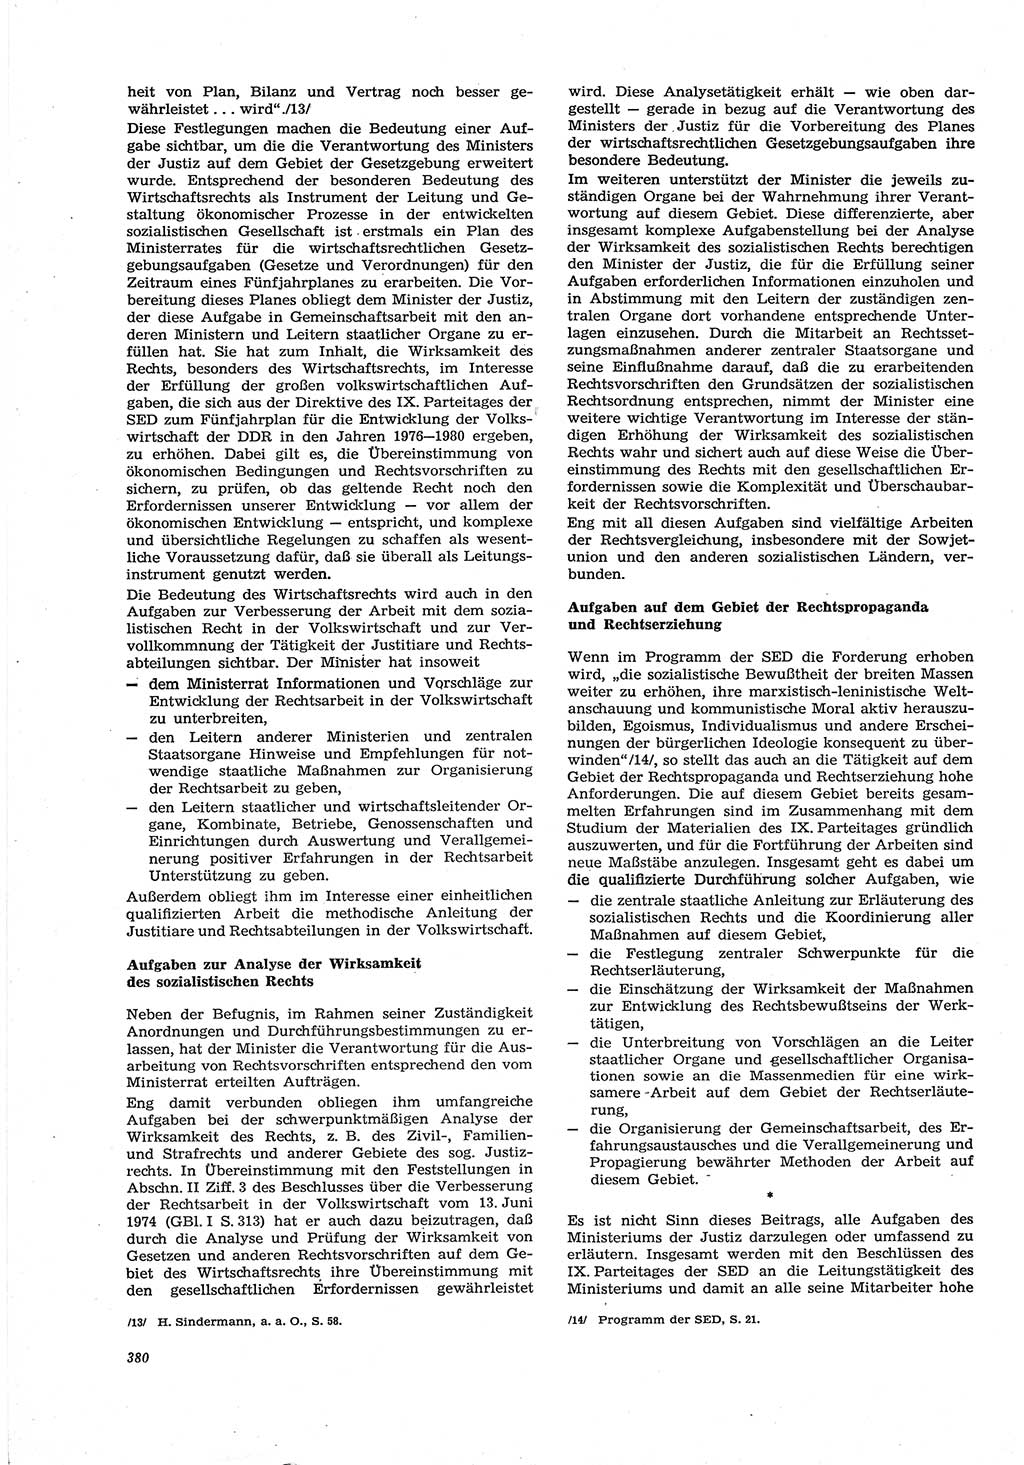 Neue Justiz (NJ), Zeitschrift für Recht und Rechtswissenschaft [Deutsche Demokratische Republik (DDR)], 30. Jahrgang 1976, Seite 380 (NJ DDR 1976, S. 380)